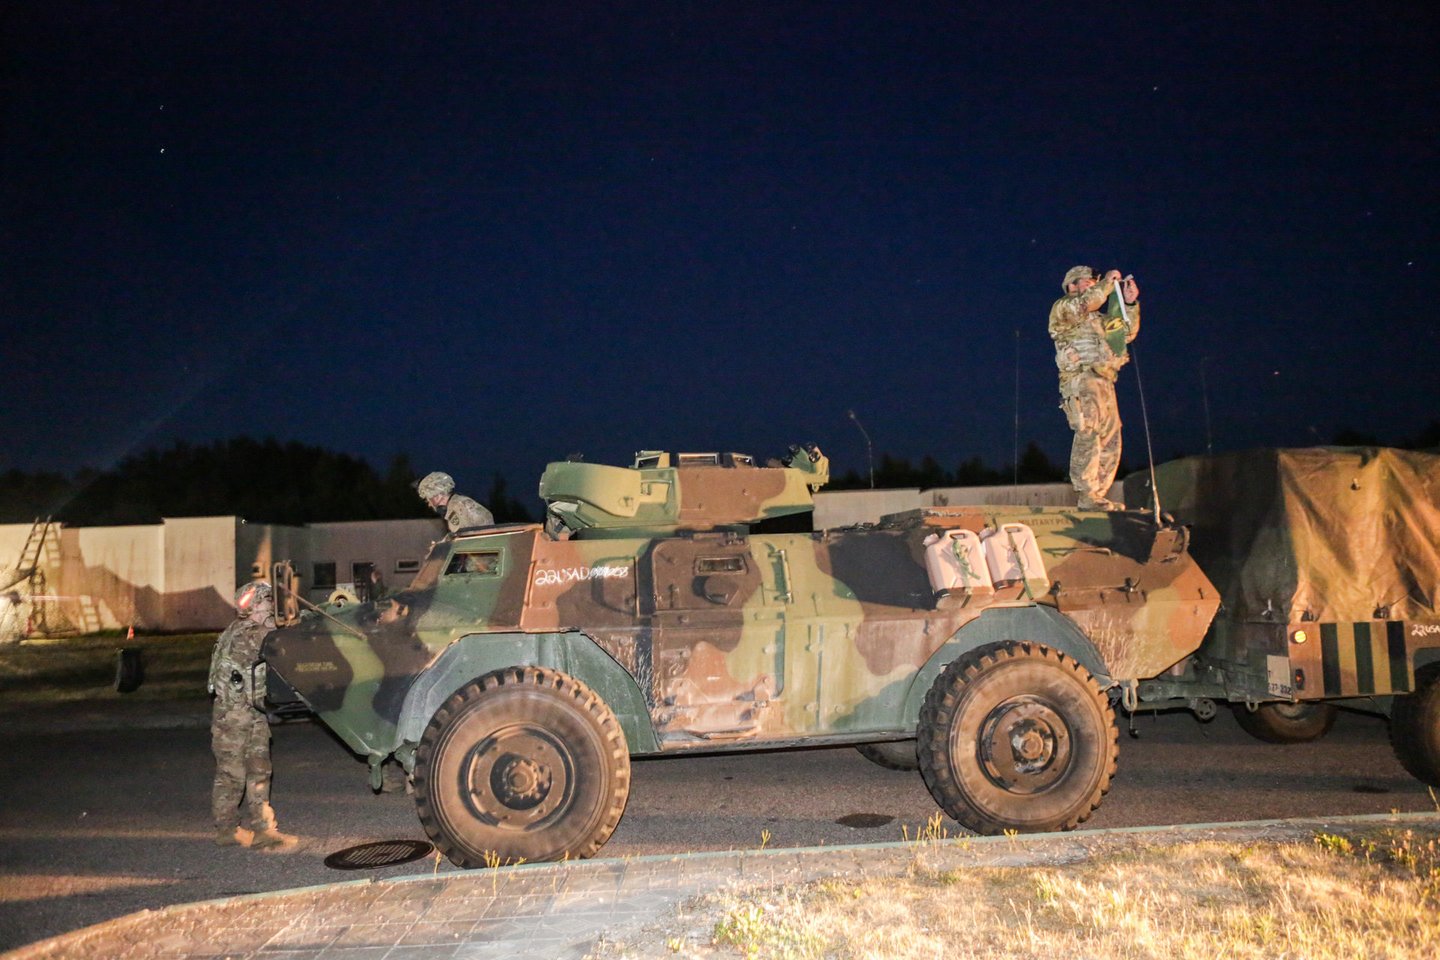 NATO sąjungininkų karinė technika į Lietuvos teritoriją įvažiavo naktį. <br> G. Bitvinsko nuotr.